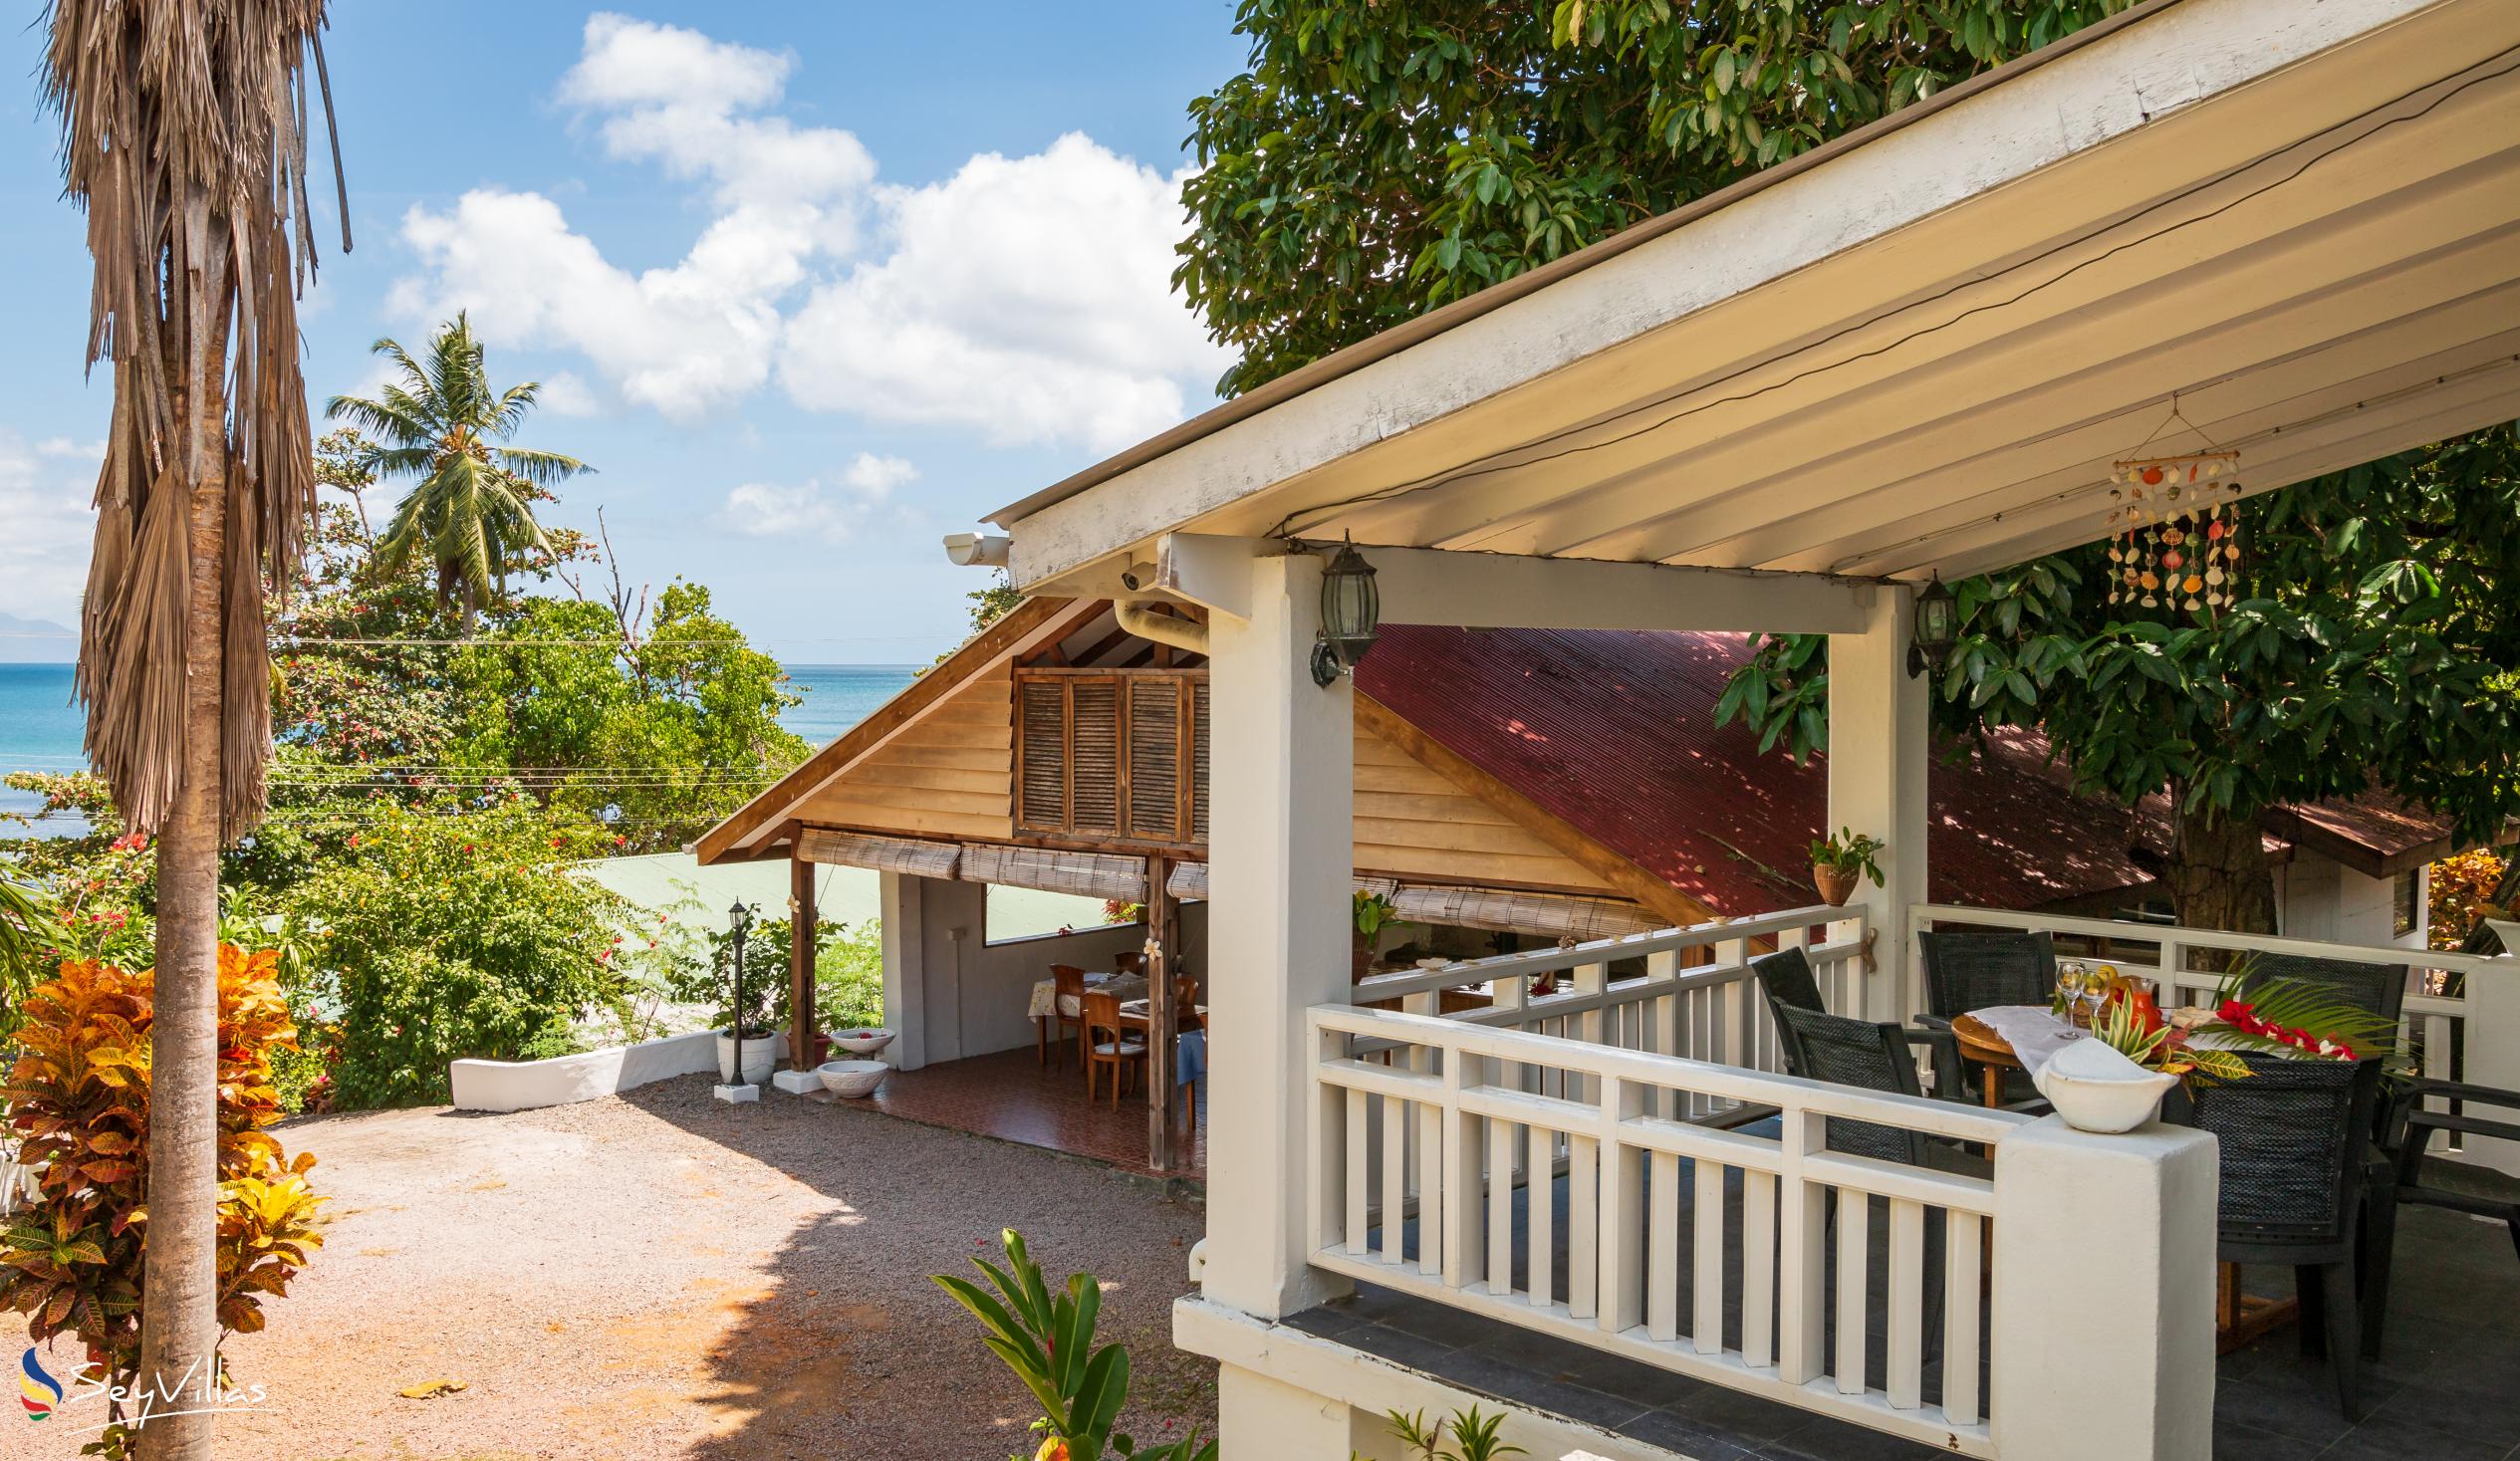 Foto 35: The Beach House (Chateau Martha) - Maison de vacances avec 2 chambres à coucher - Mahé (Seychelles)